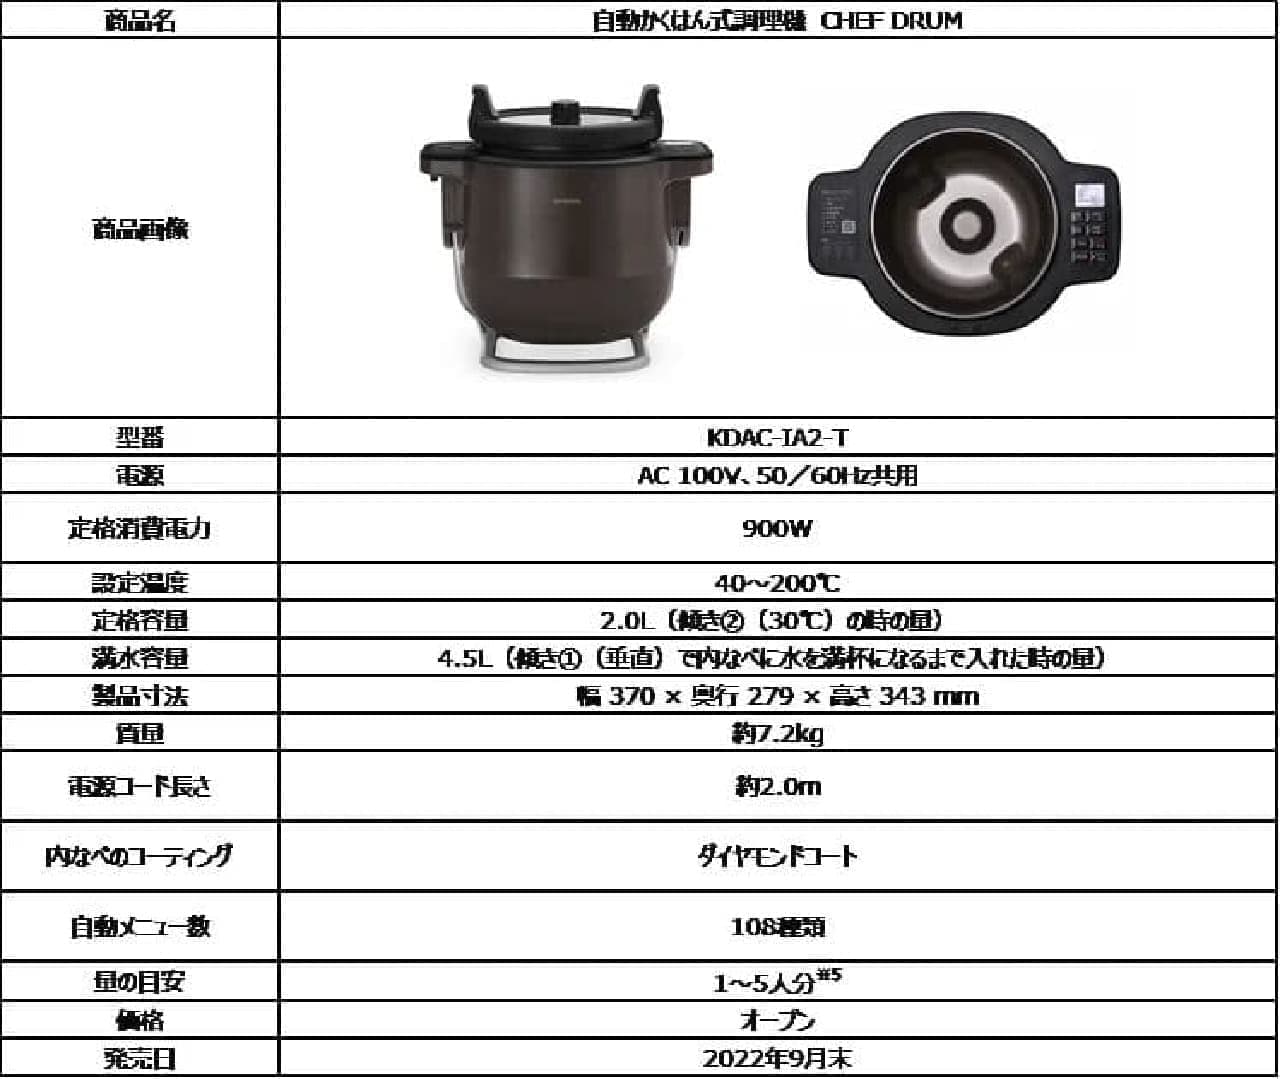 アイリスオーヤマ「自動かくはん式調理機 CHEF DRUM（シェフドラム）」